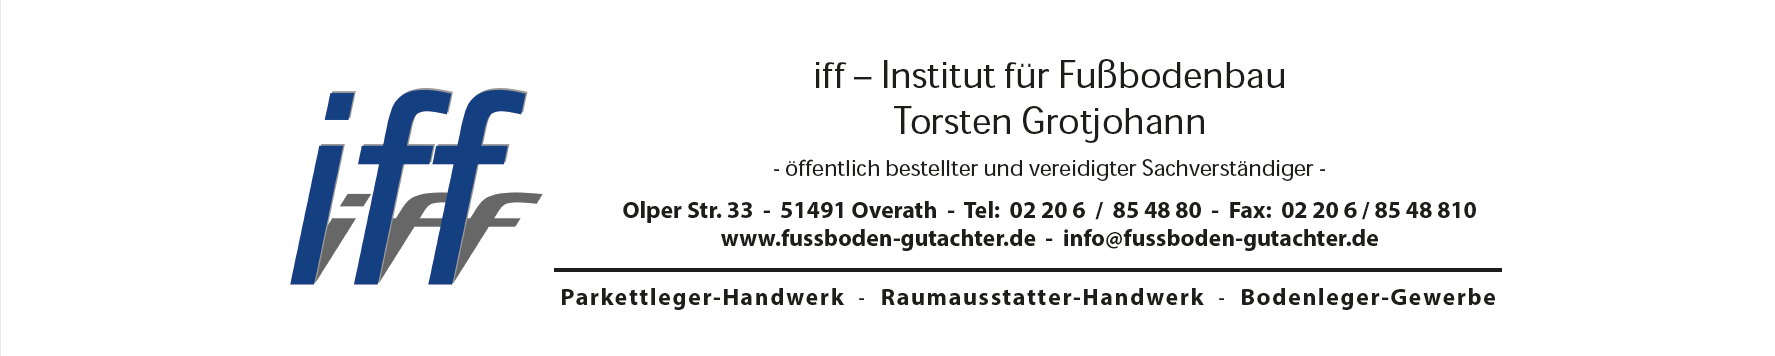 iff - Institut für Fußbodenbau Torsten Grotjohann
